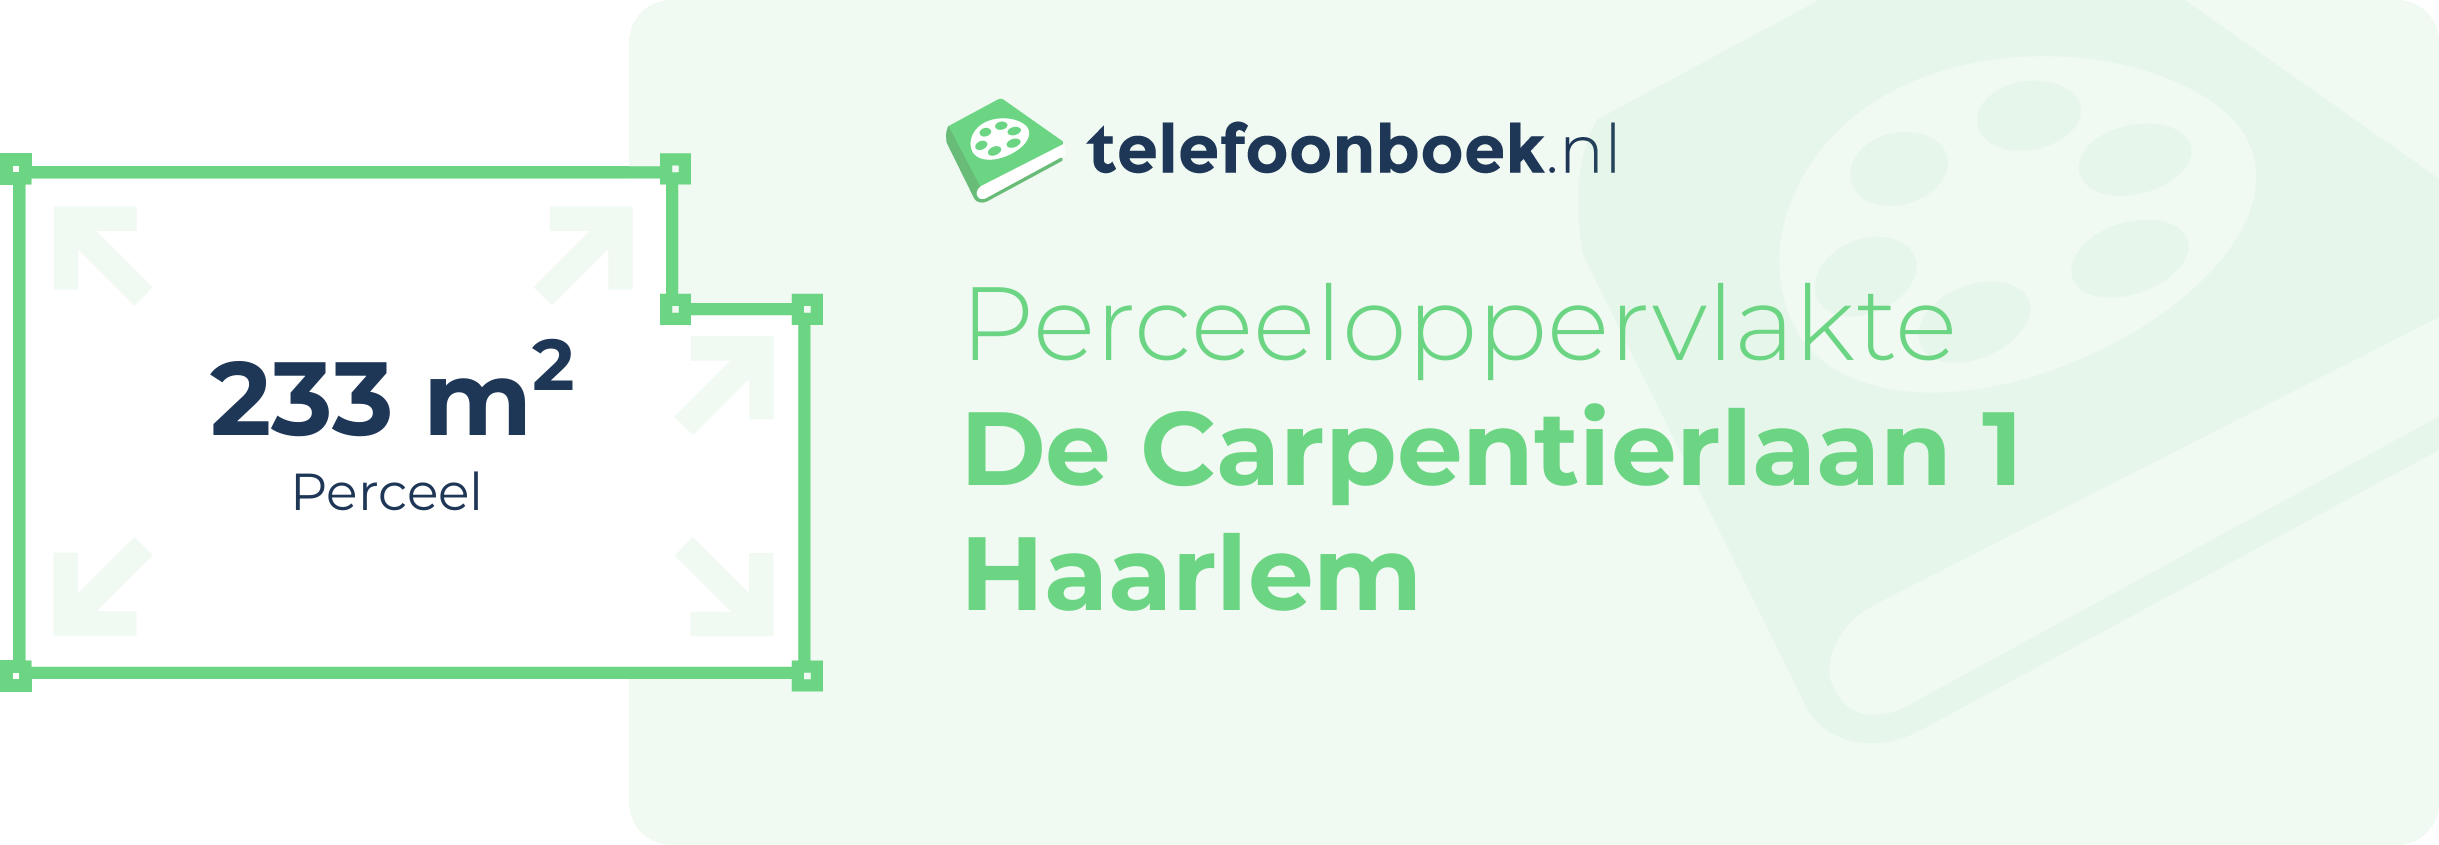 Perceeloppervlakte De Carpentierlaan 1 Haarlem